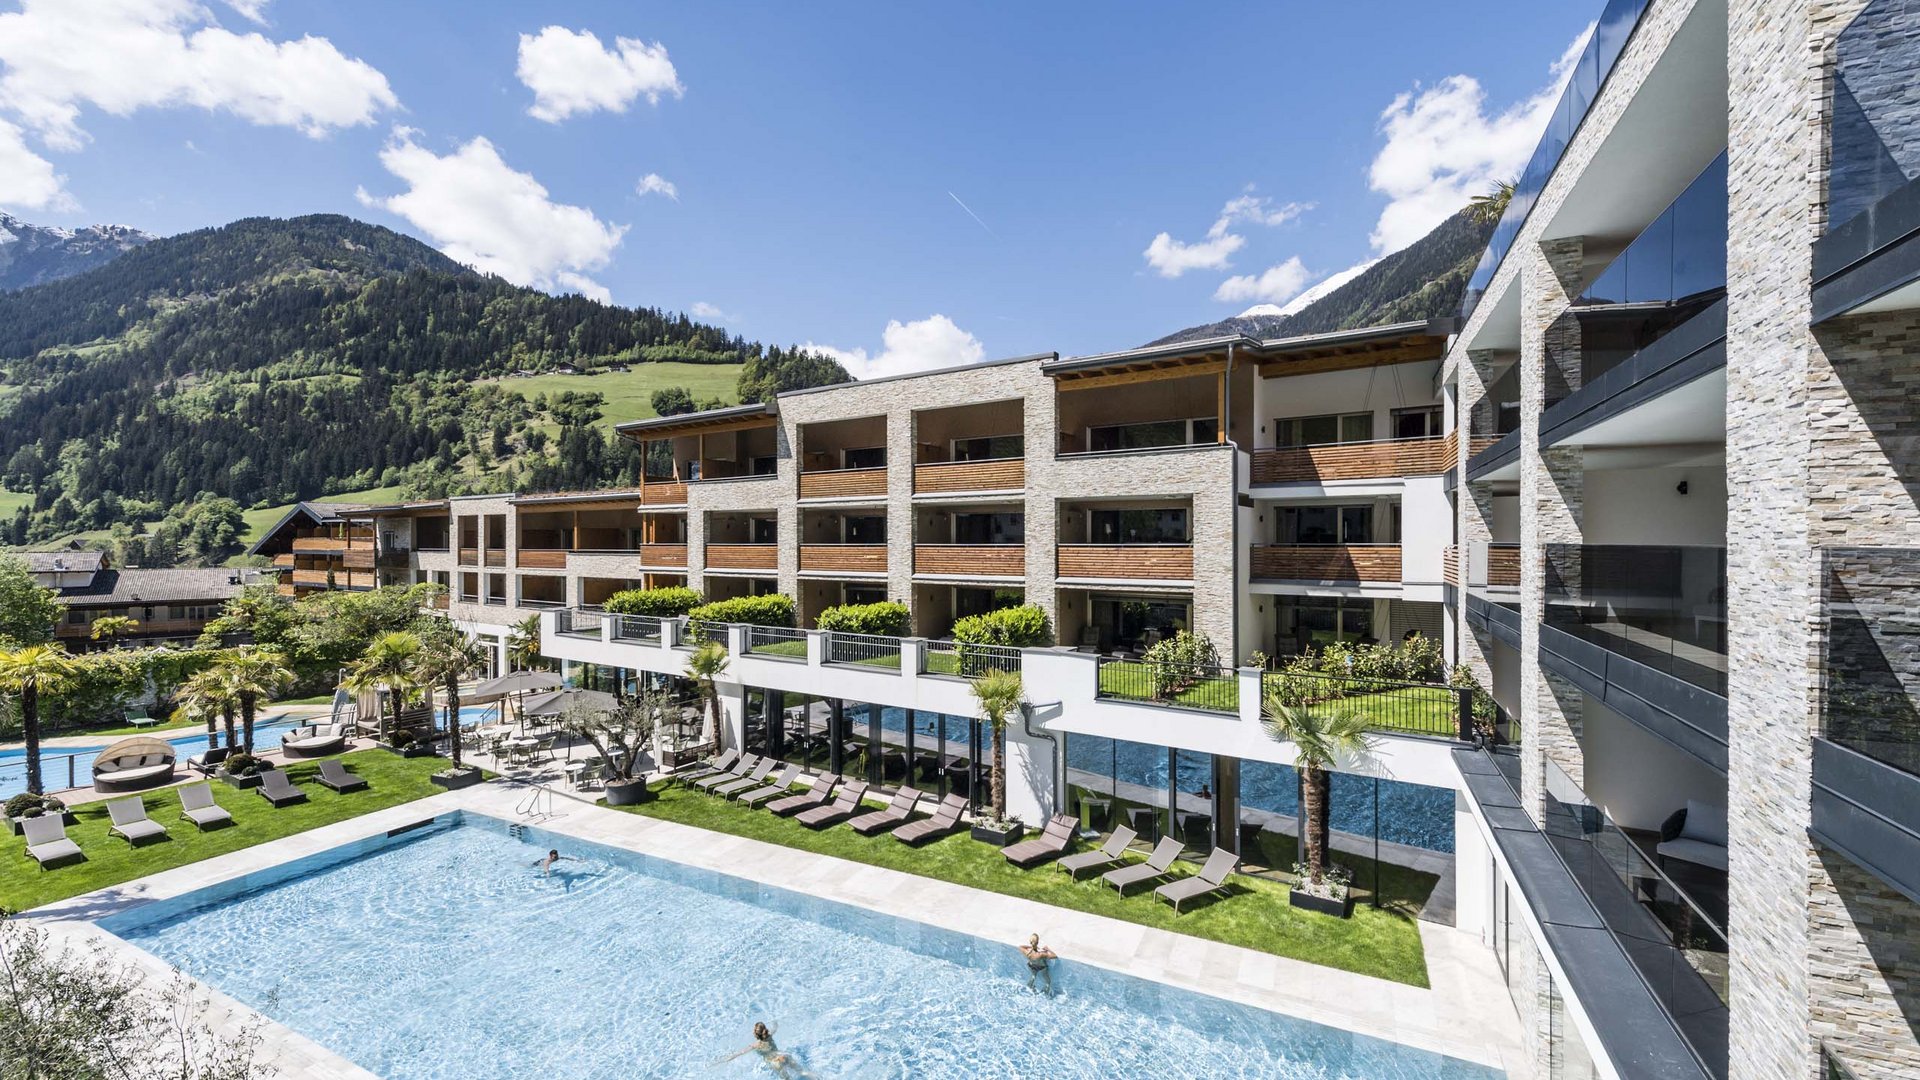 Vacanze al Lago di Garda o in hotel in Val Passiria?